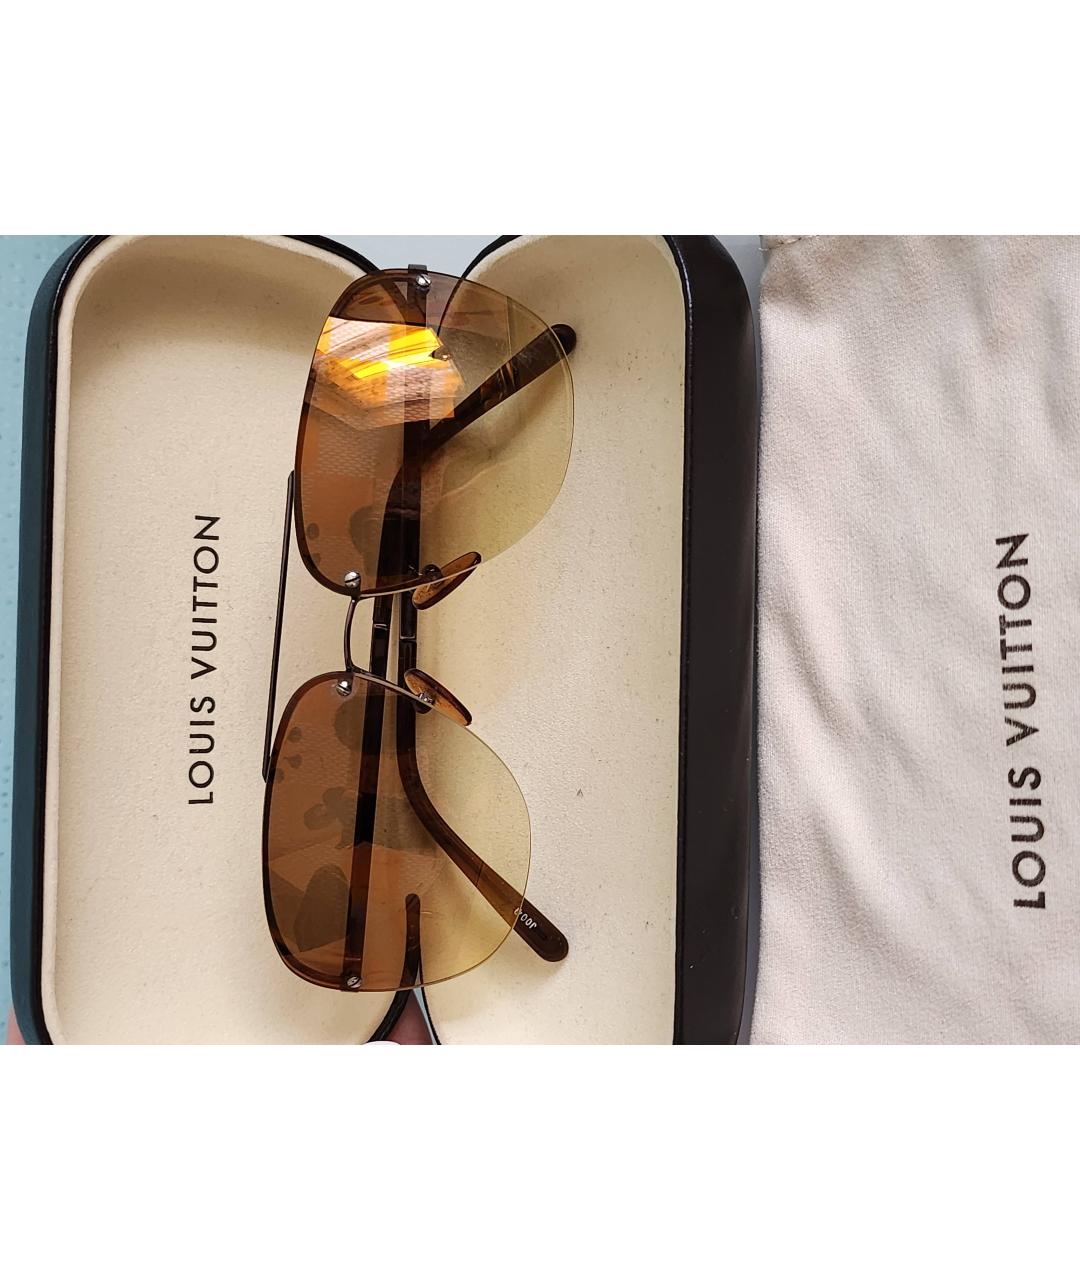 LOUIS VUITTON PRE-OWNED Коричневые металлические солнцезащитные очки, фото 5